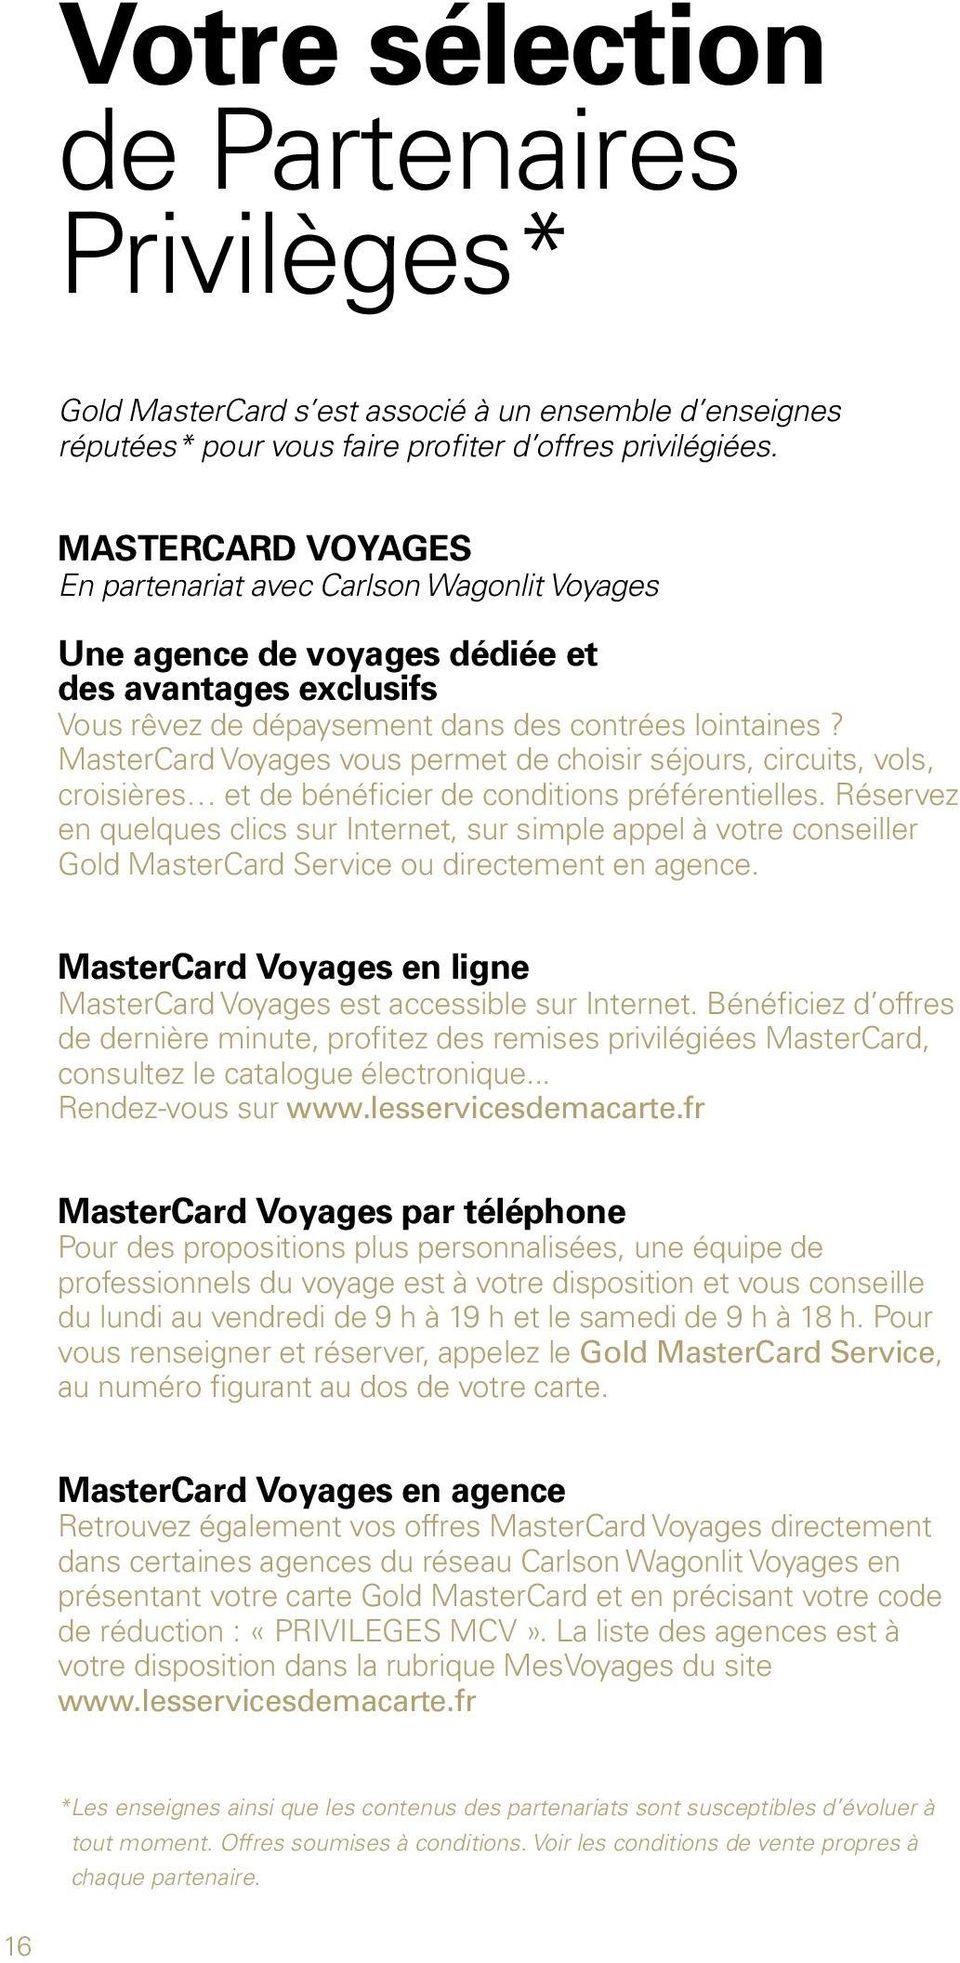 MasterCard Voyages vous permet de choisir séjours, circuits, vols, croisières et de bénéficier de conditions préférentielles.